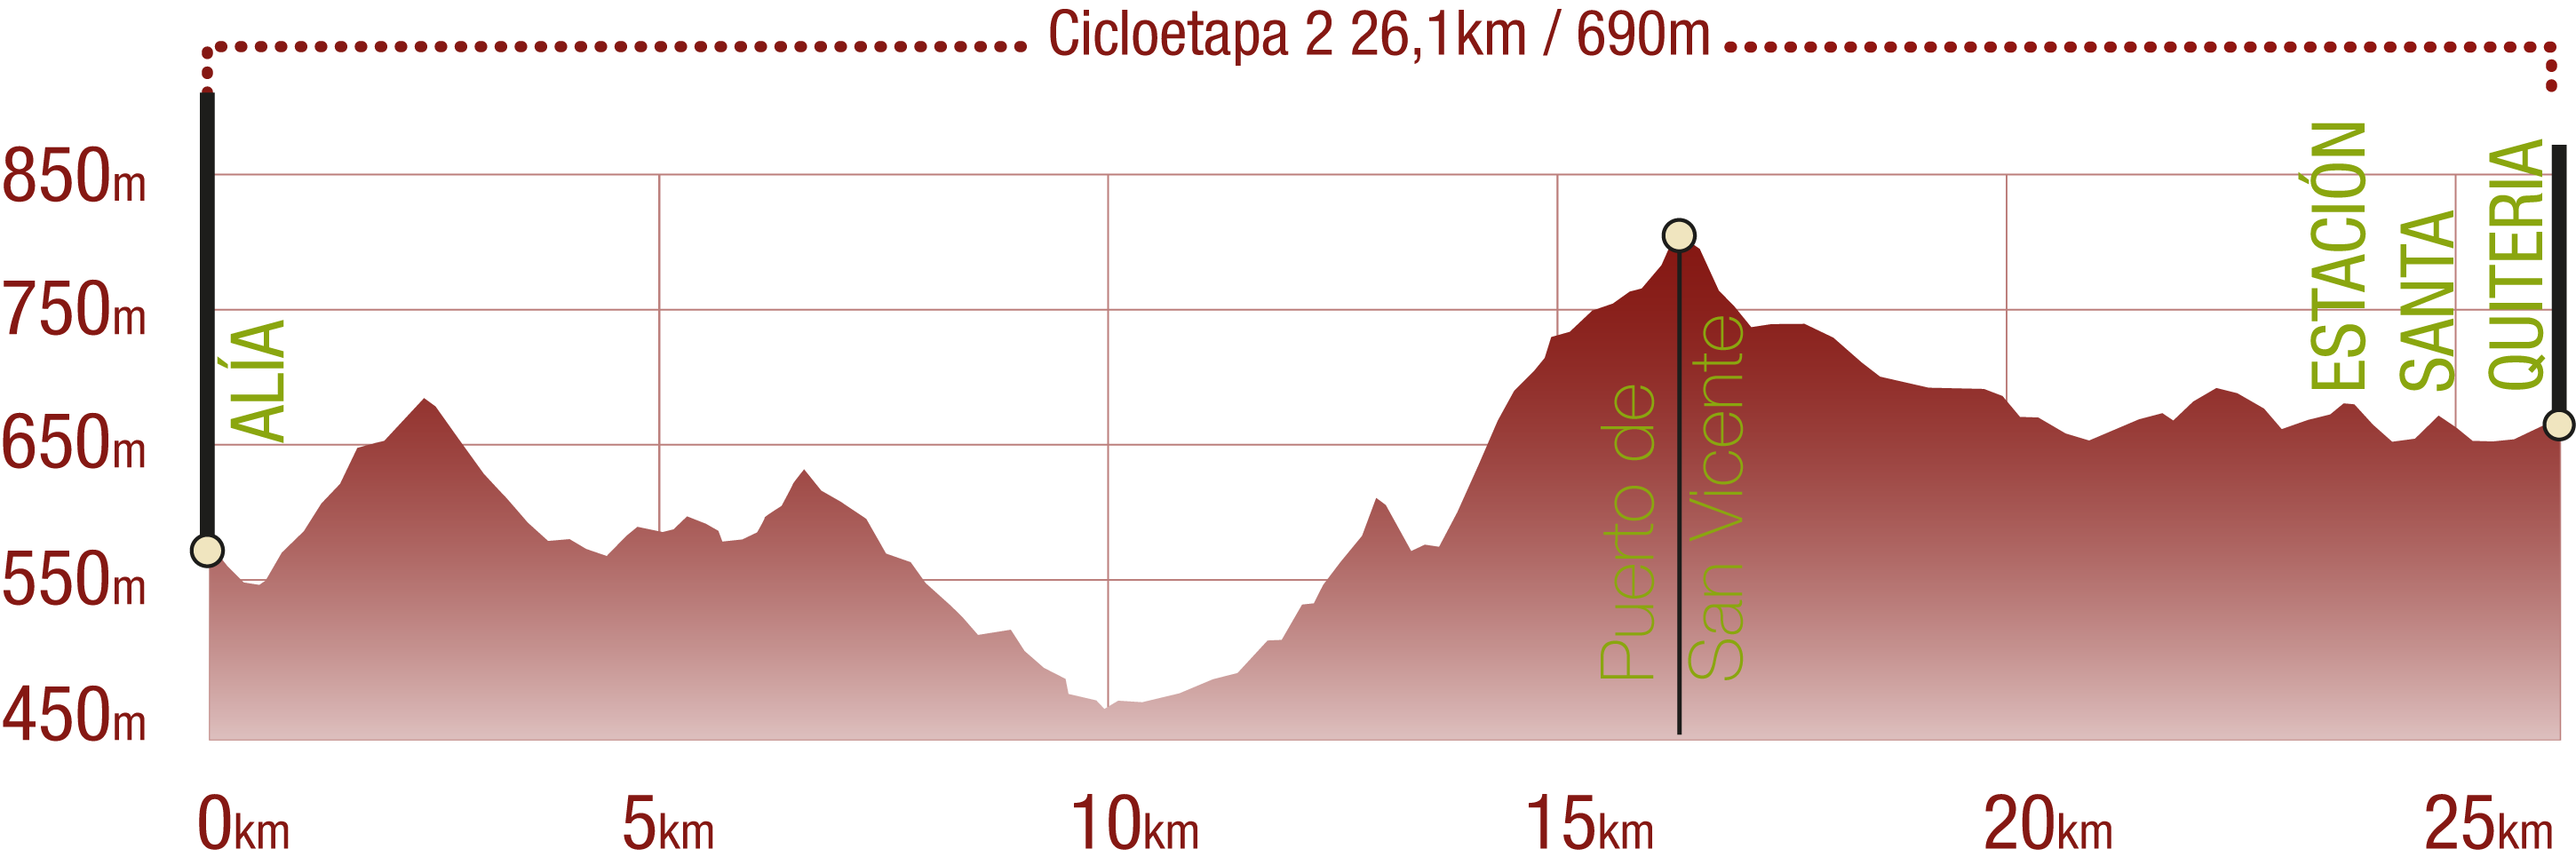 Perfil 
Perfil de la Cicloetapa 2 del CN de las Villuercas: 26,1 km / Desnivel de subida 690 m

